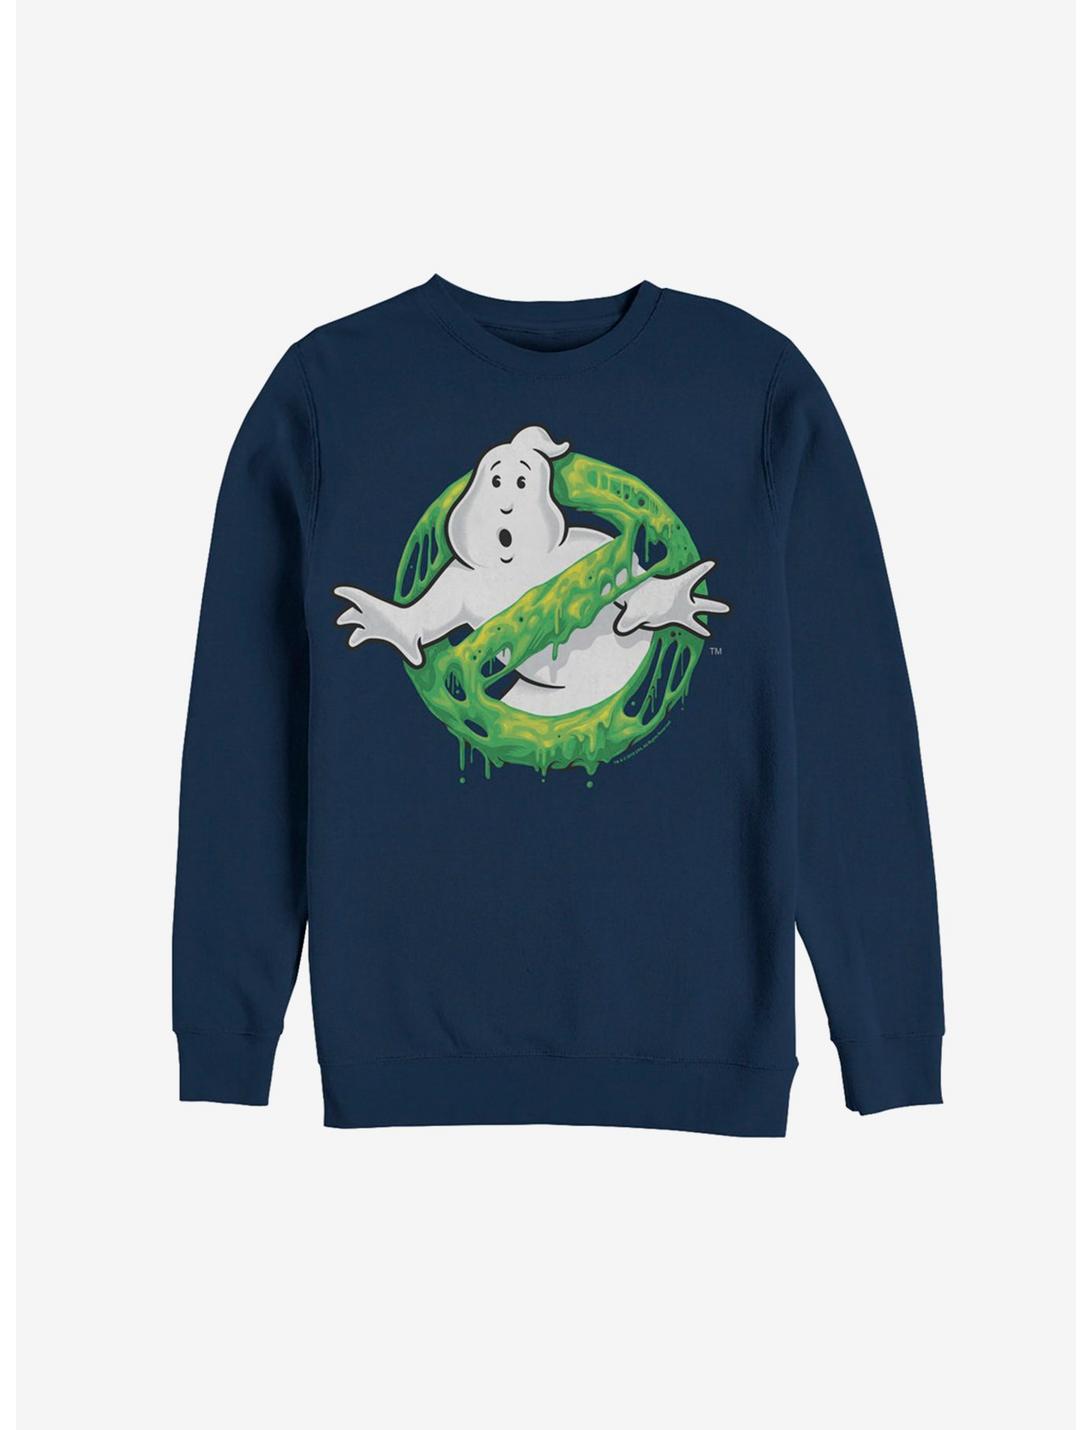 Ghostbusters Ghost Logo Green Slime Sweatshirt, NAVY, hi-res